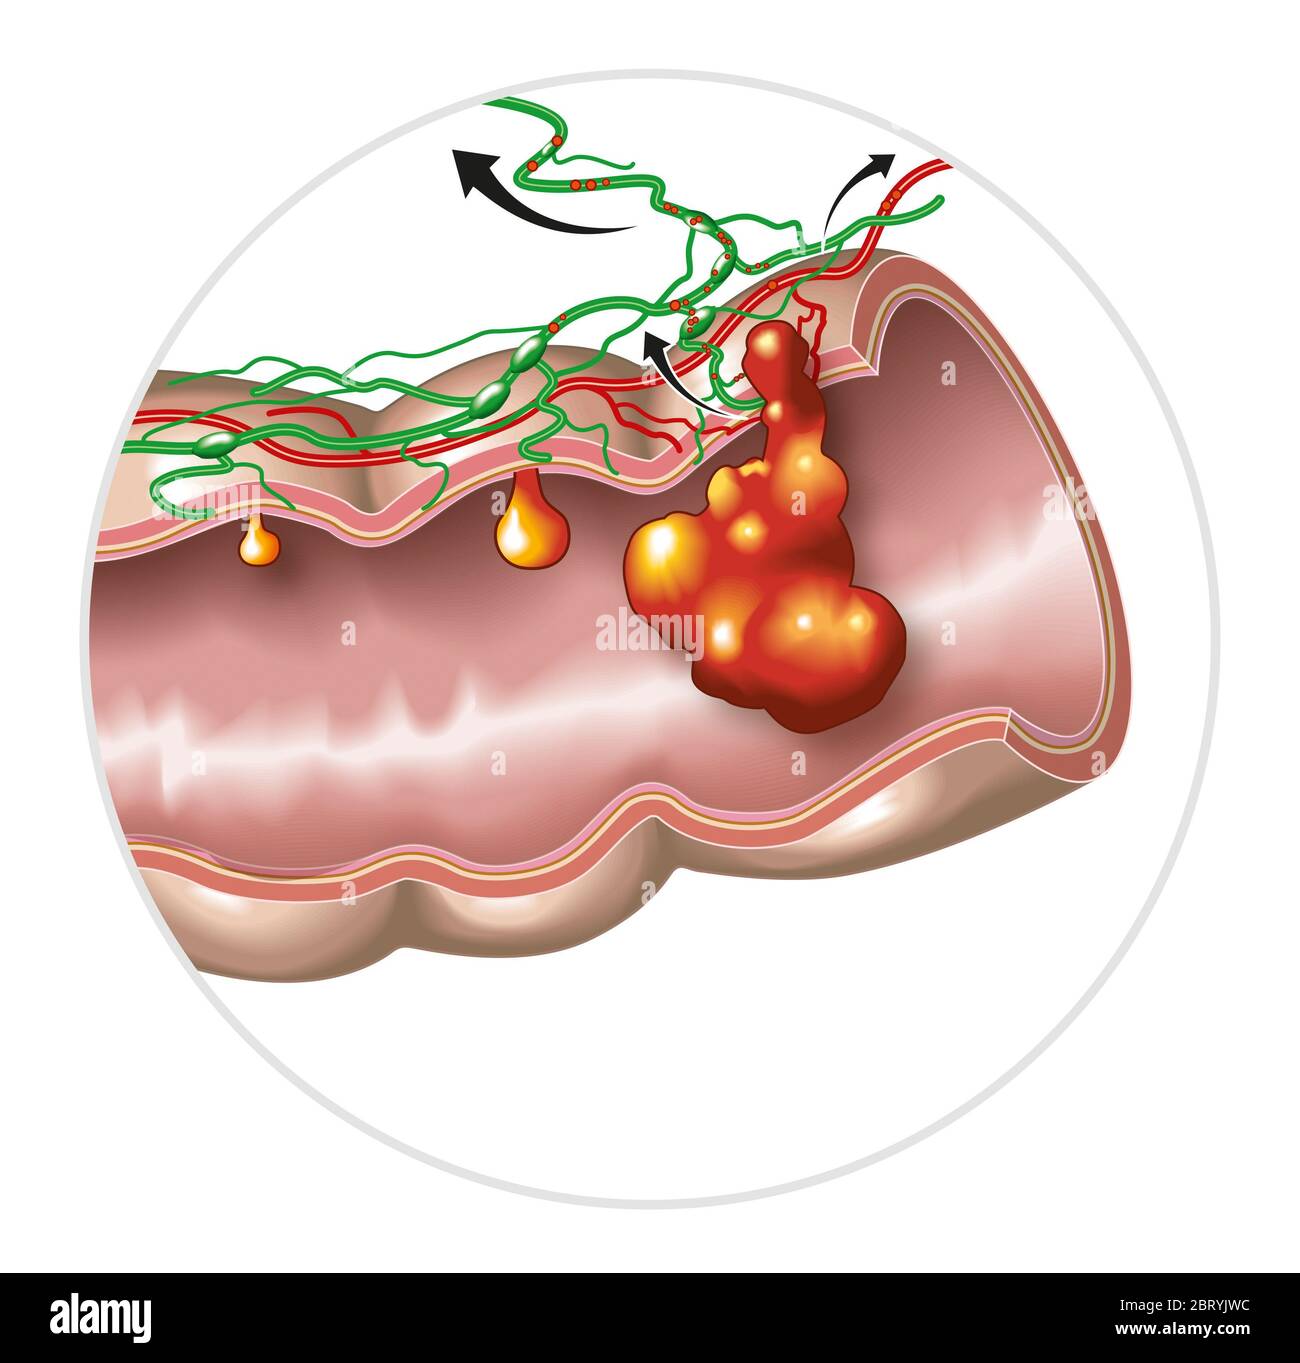 Illustration montrant une grande digestion avec polype intestinale, polype maligneux et cancer du côlon et se propageant dans les ganglions lymphatiques et les vaisseaux Banque D'Images